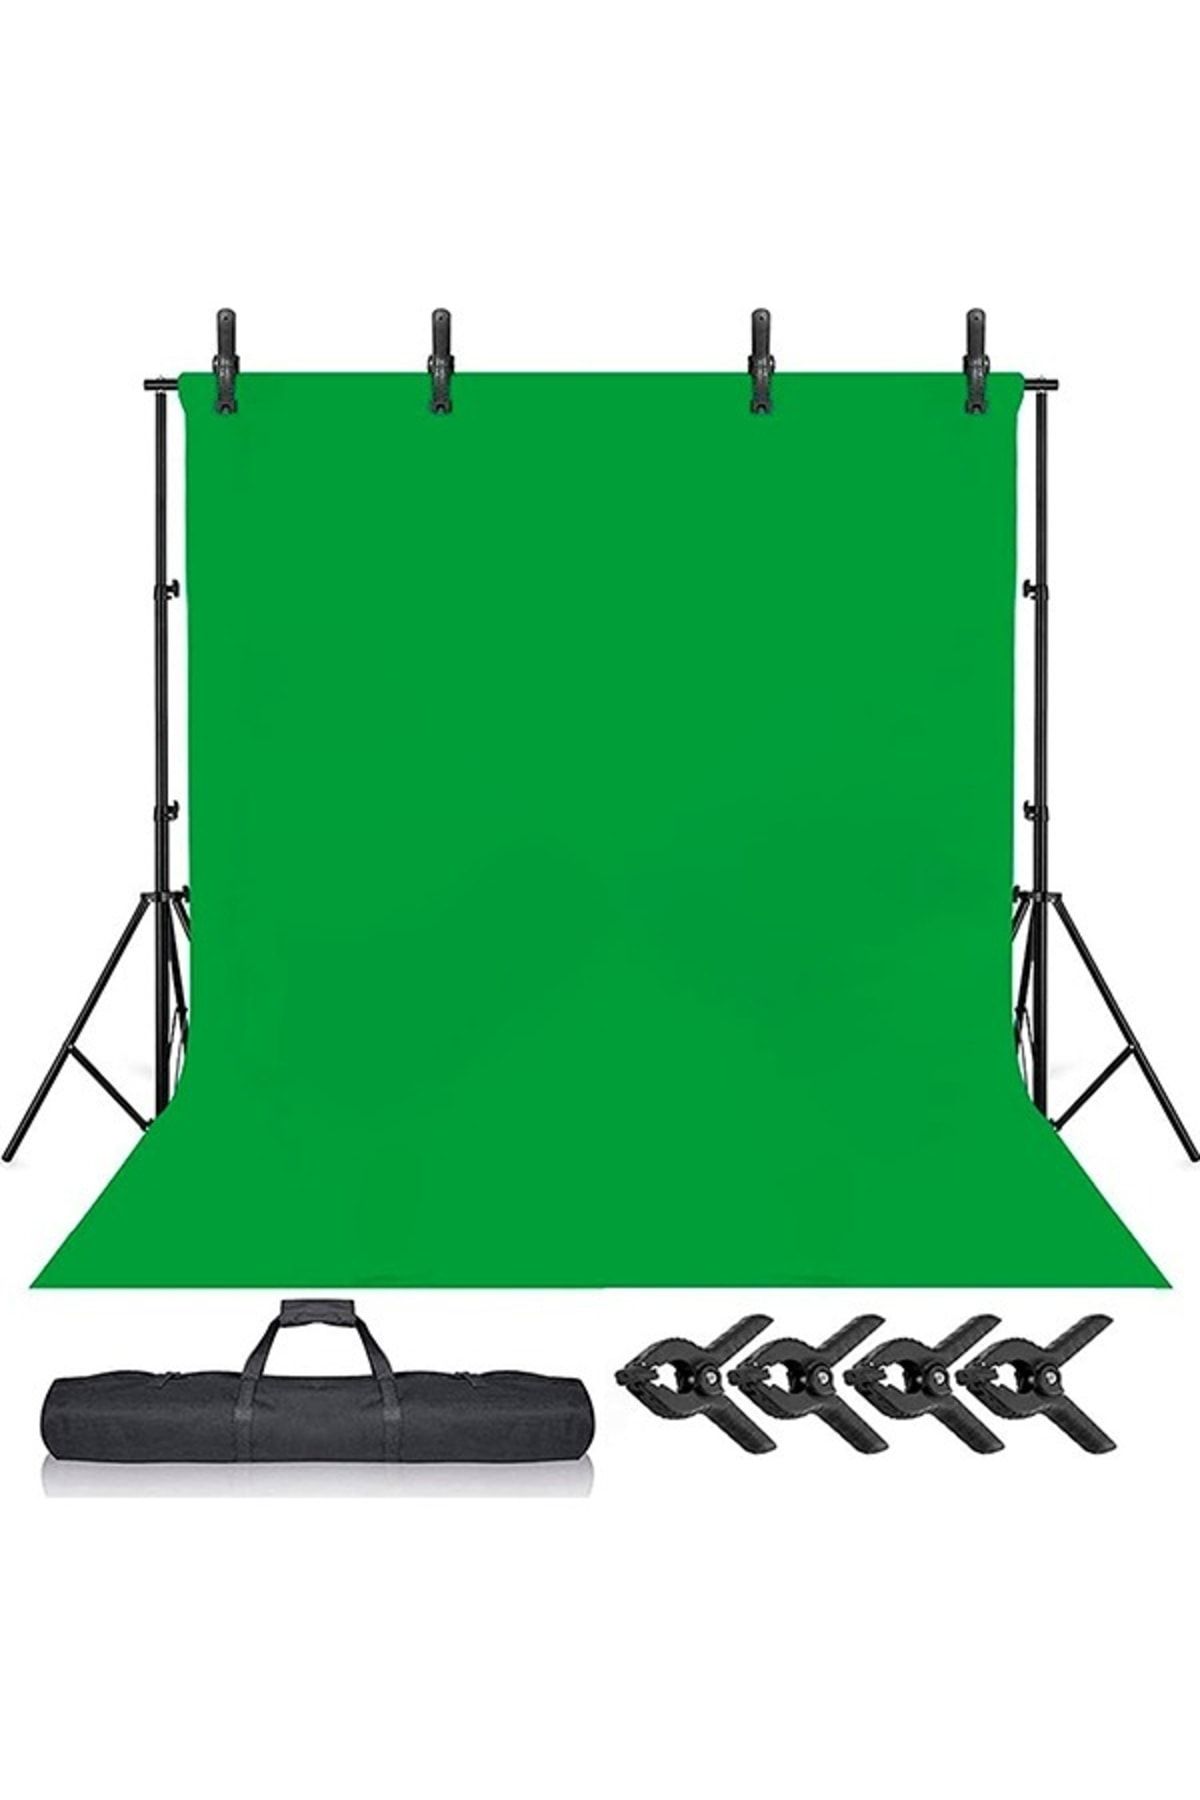 ADA GREENBOX Green Screen Greenbox Yeşil Fon Perde 2x3m  Fon Standı 4 Mandal